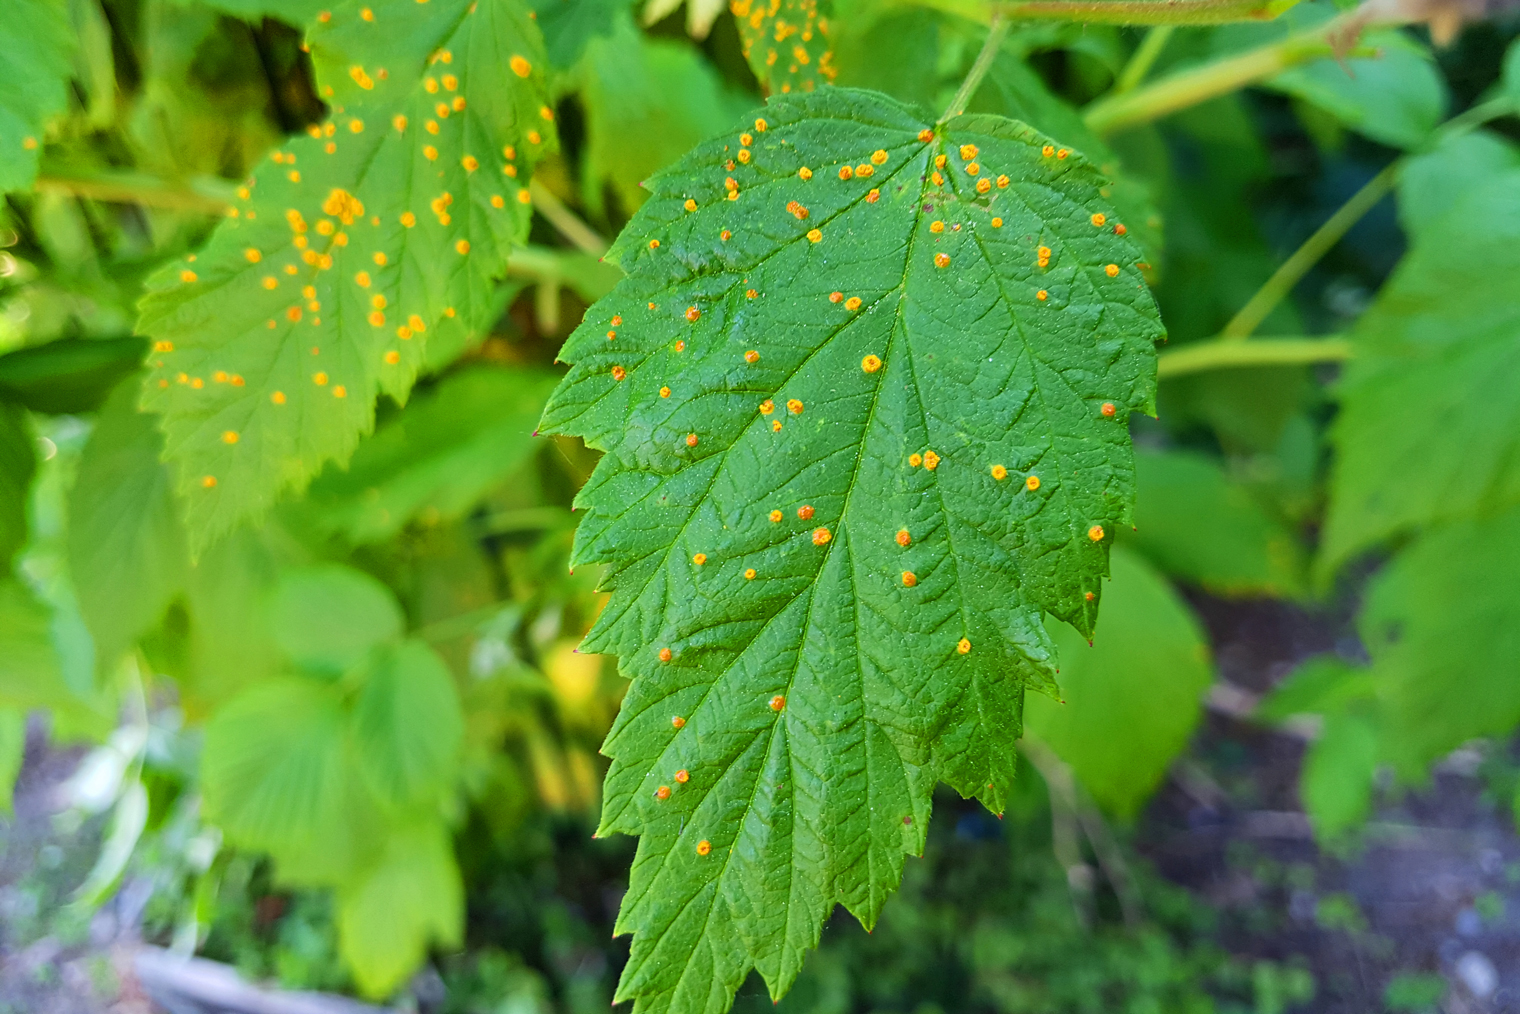 Желтые пятна на листьях говорят о грибковом заболевании малины. Фотография: P. Qvist / Shutterstock / FOTODOM